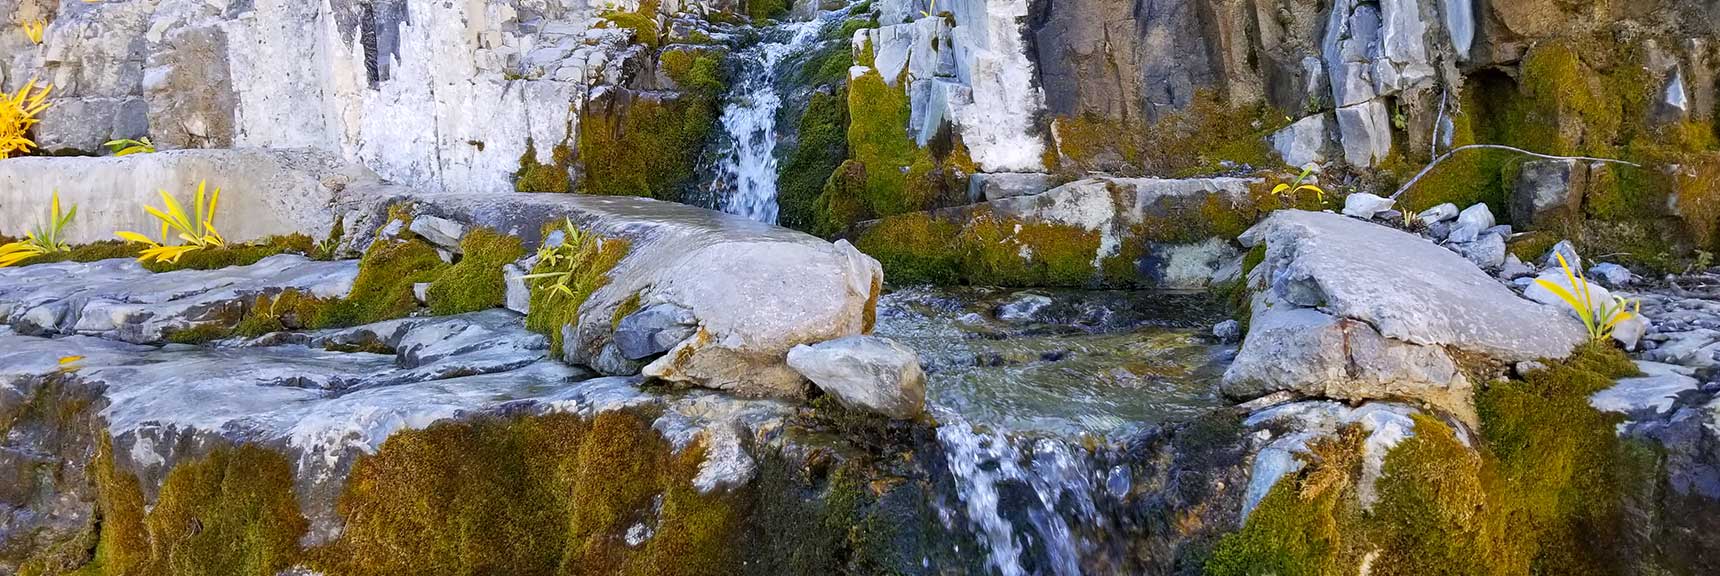 Waterfall in Wash Below Lee Peak in Lee Canyon, Nevada